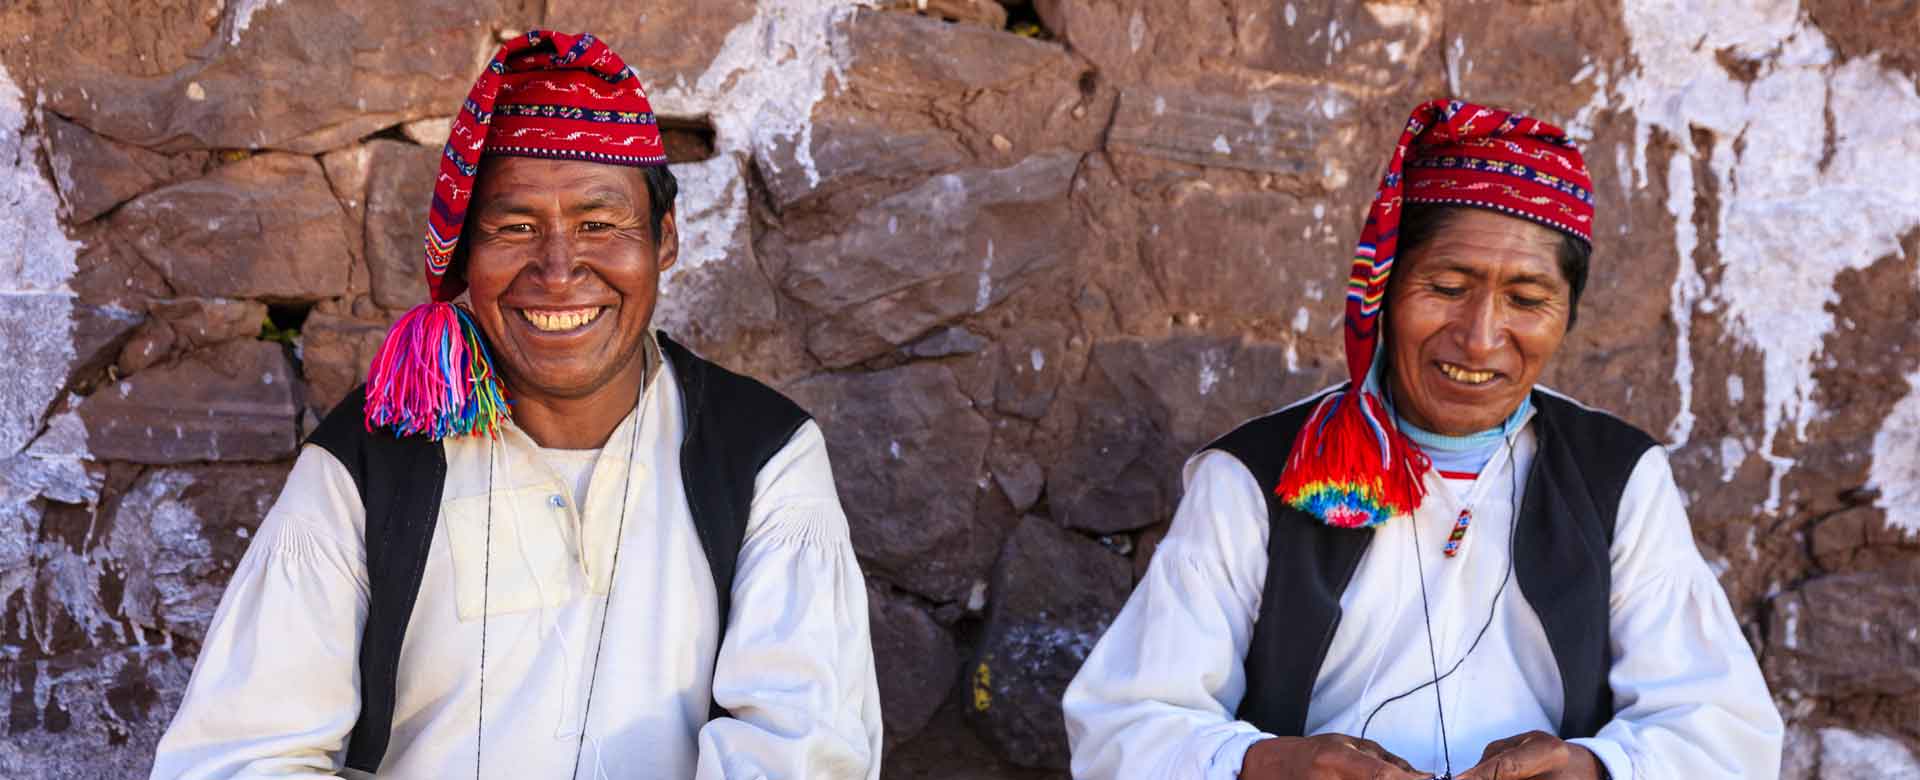 5 rencontres inoubliables à vivre au Pérou